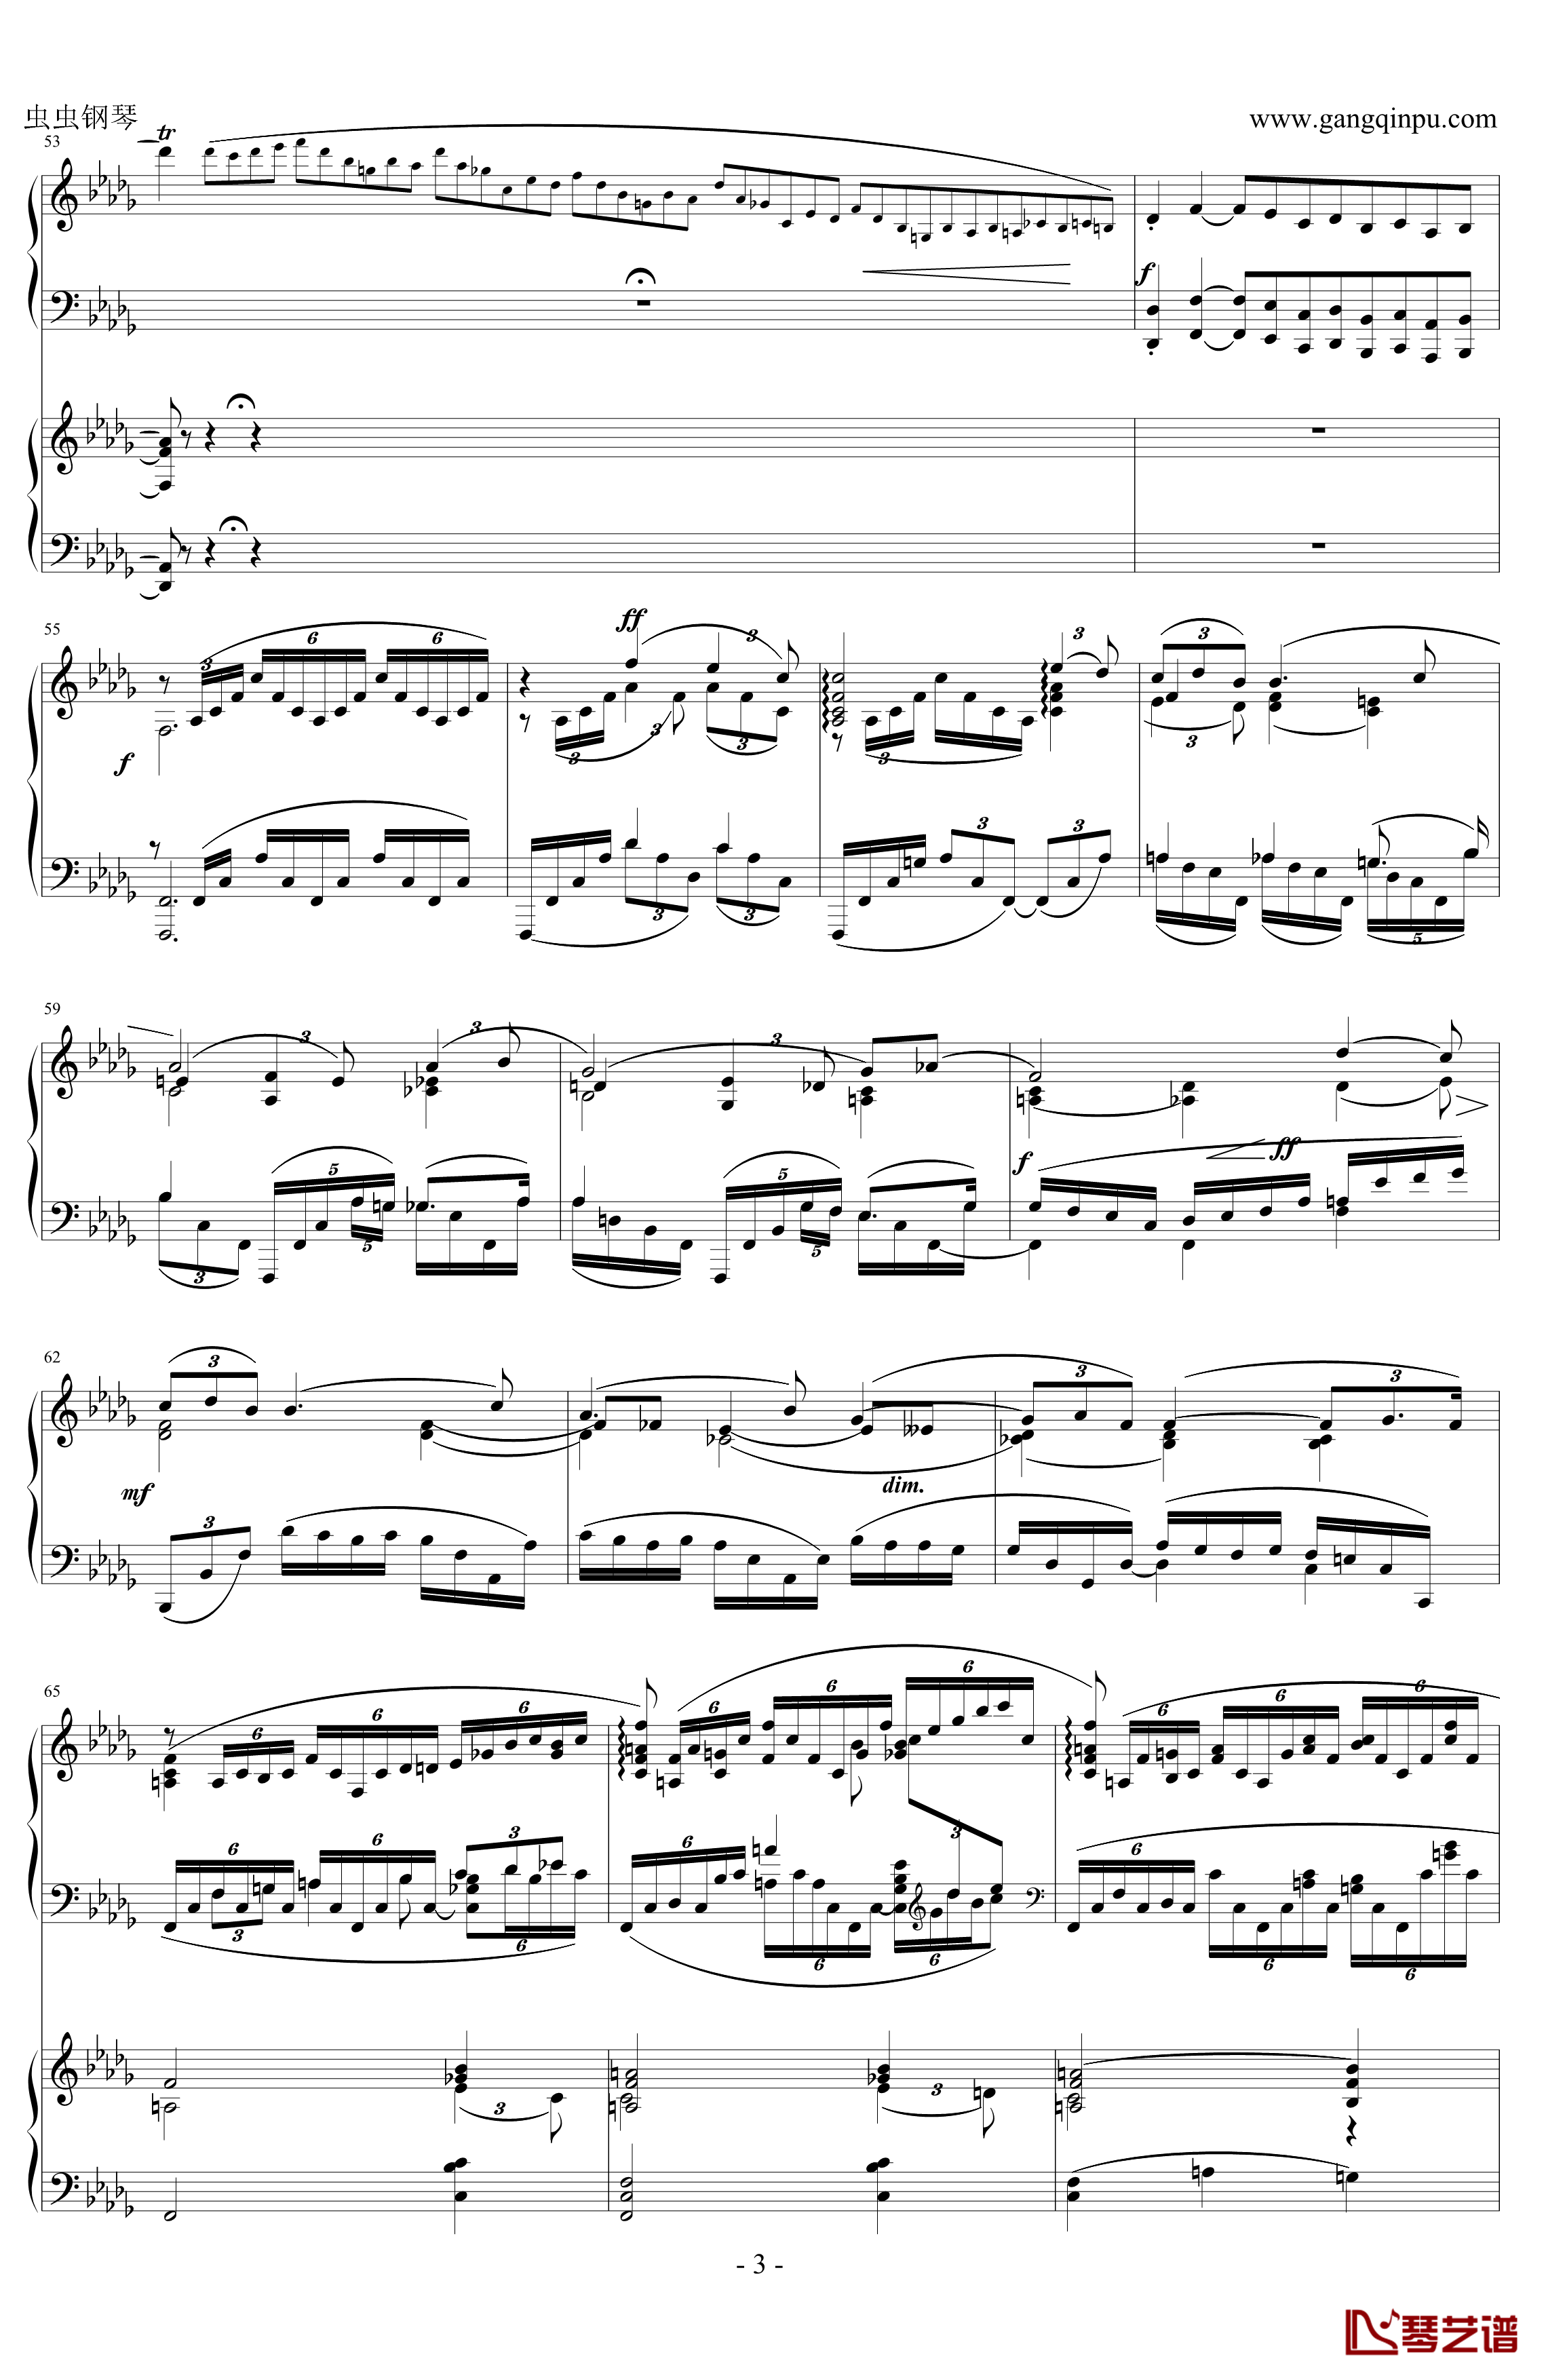 拉赫玛尼诺夫d小调第三钢琴协奏曲钢琴谱 第二乐章-拉赫马尼若夫3